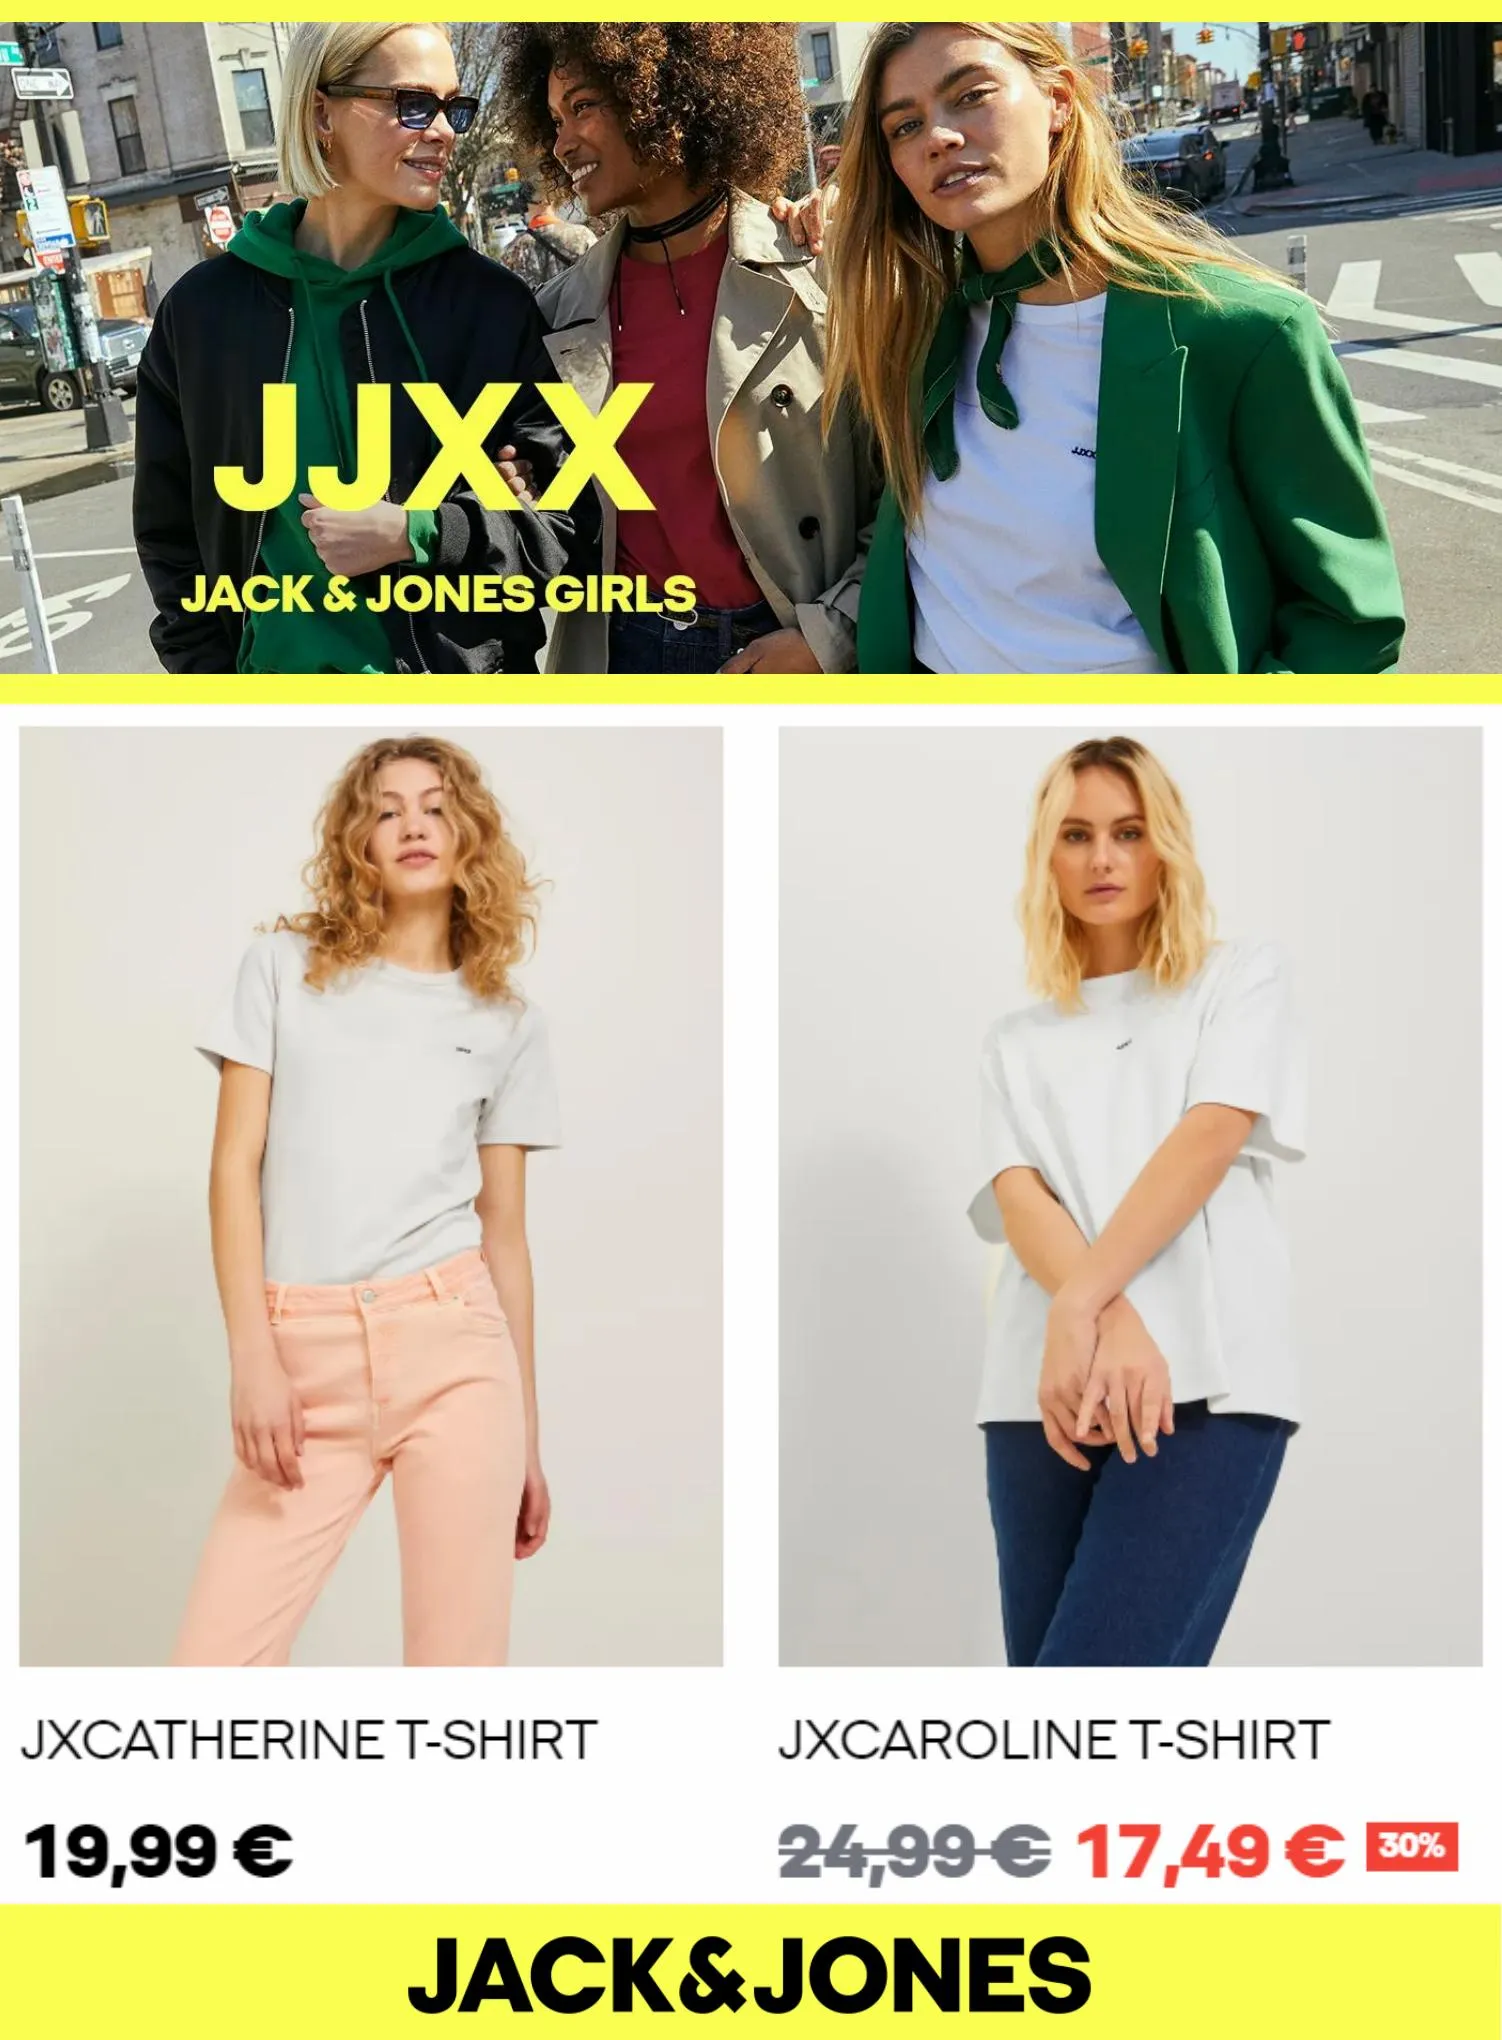 Catalogue JJXX Jack & Jones Girls, page 00003